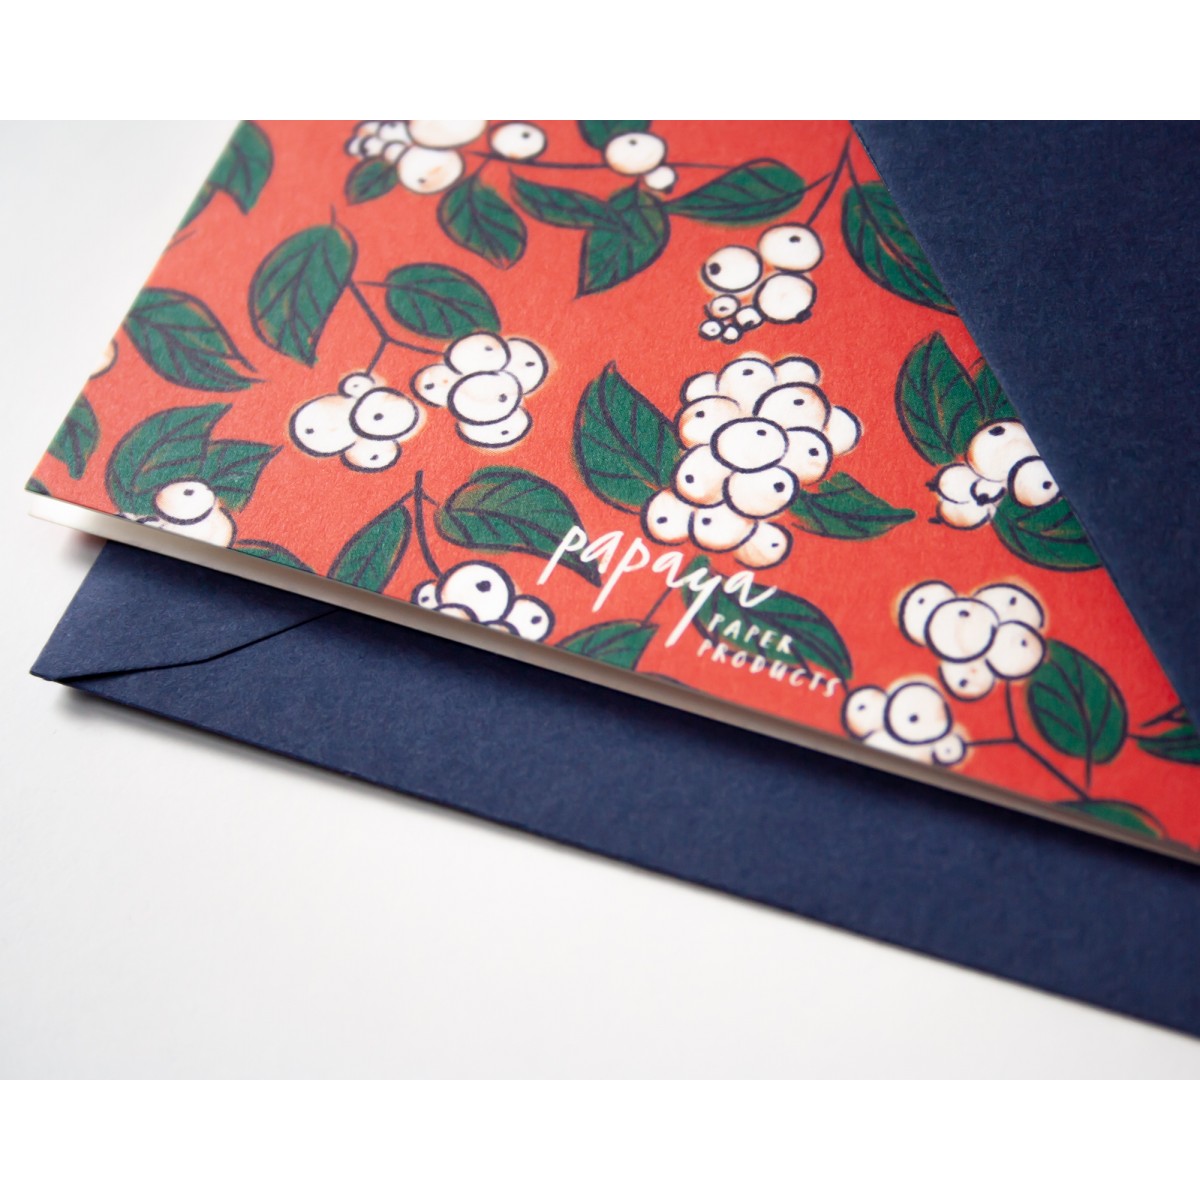 Weihnachtskarte »Fröhliche Weihnachten« mit Schneebeeren-Muster // Papaya paper products